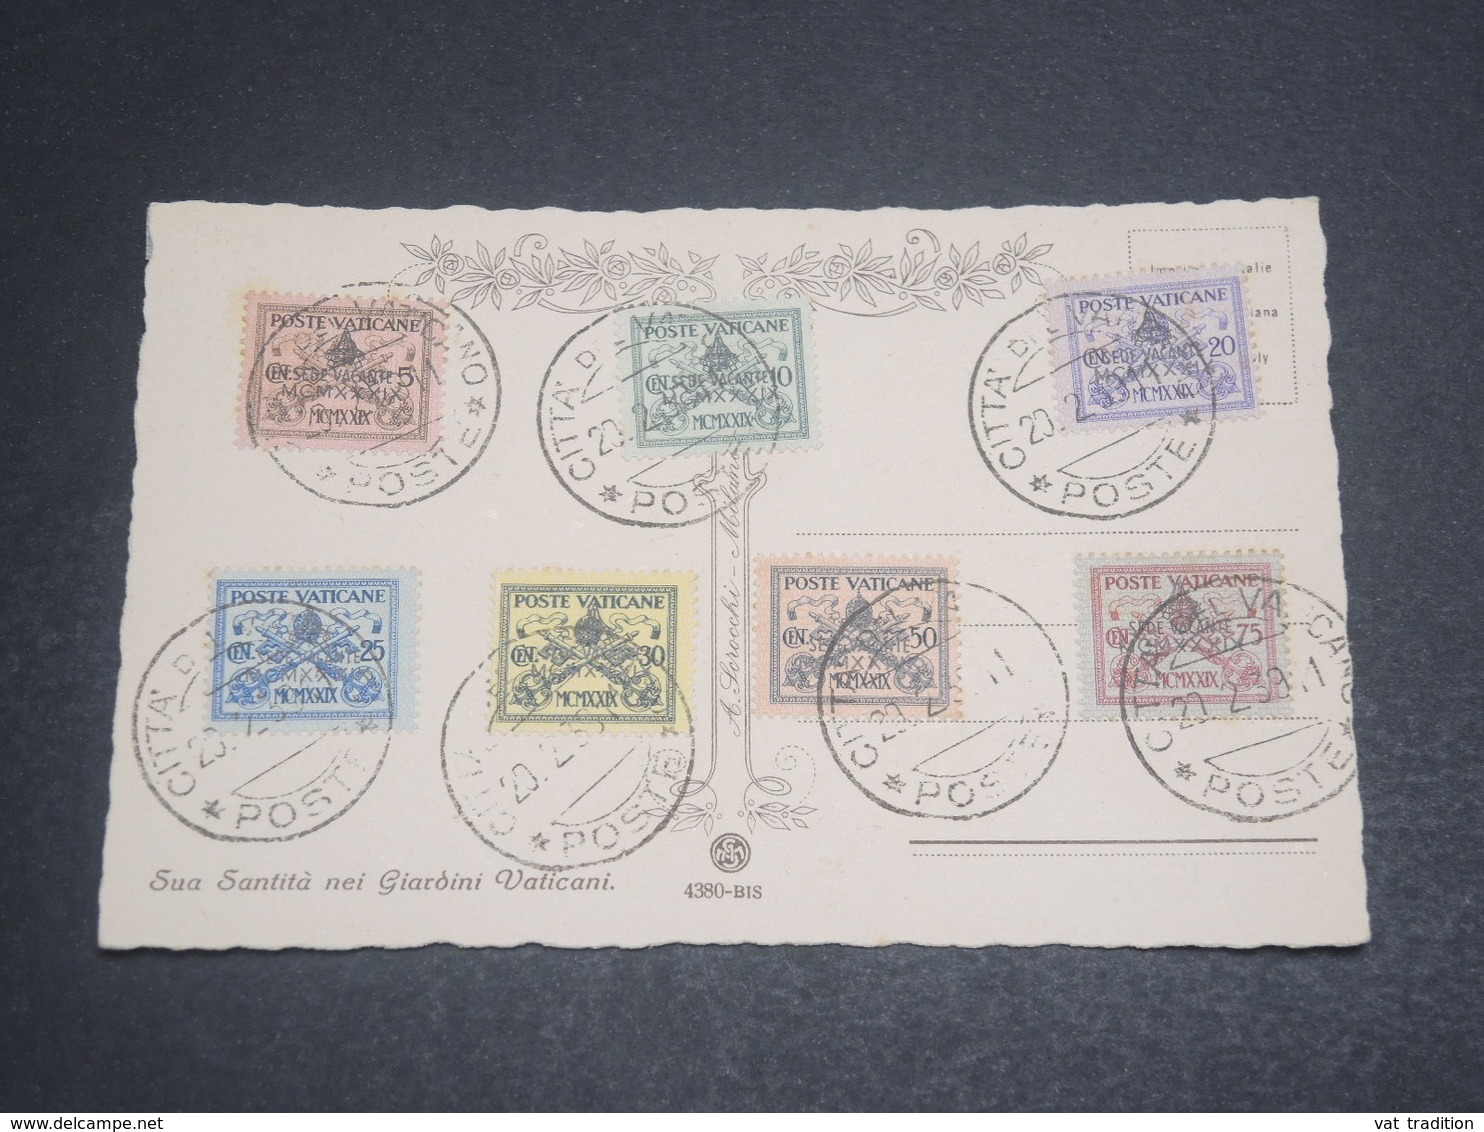 VATICAN - Série Des Clefs Sur Carte Postale En 1939 , Oblitération Plaisant - L 11947 - Covers & Documents